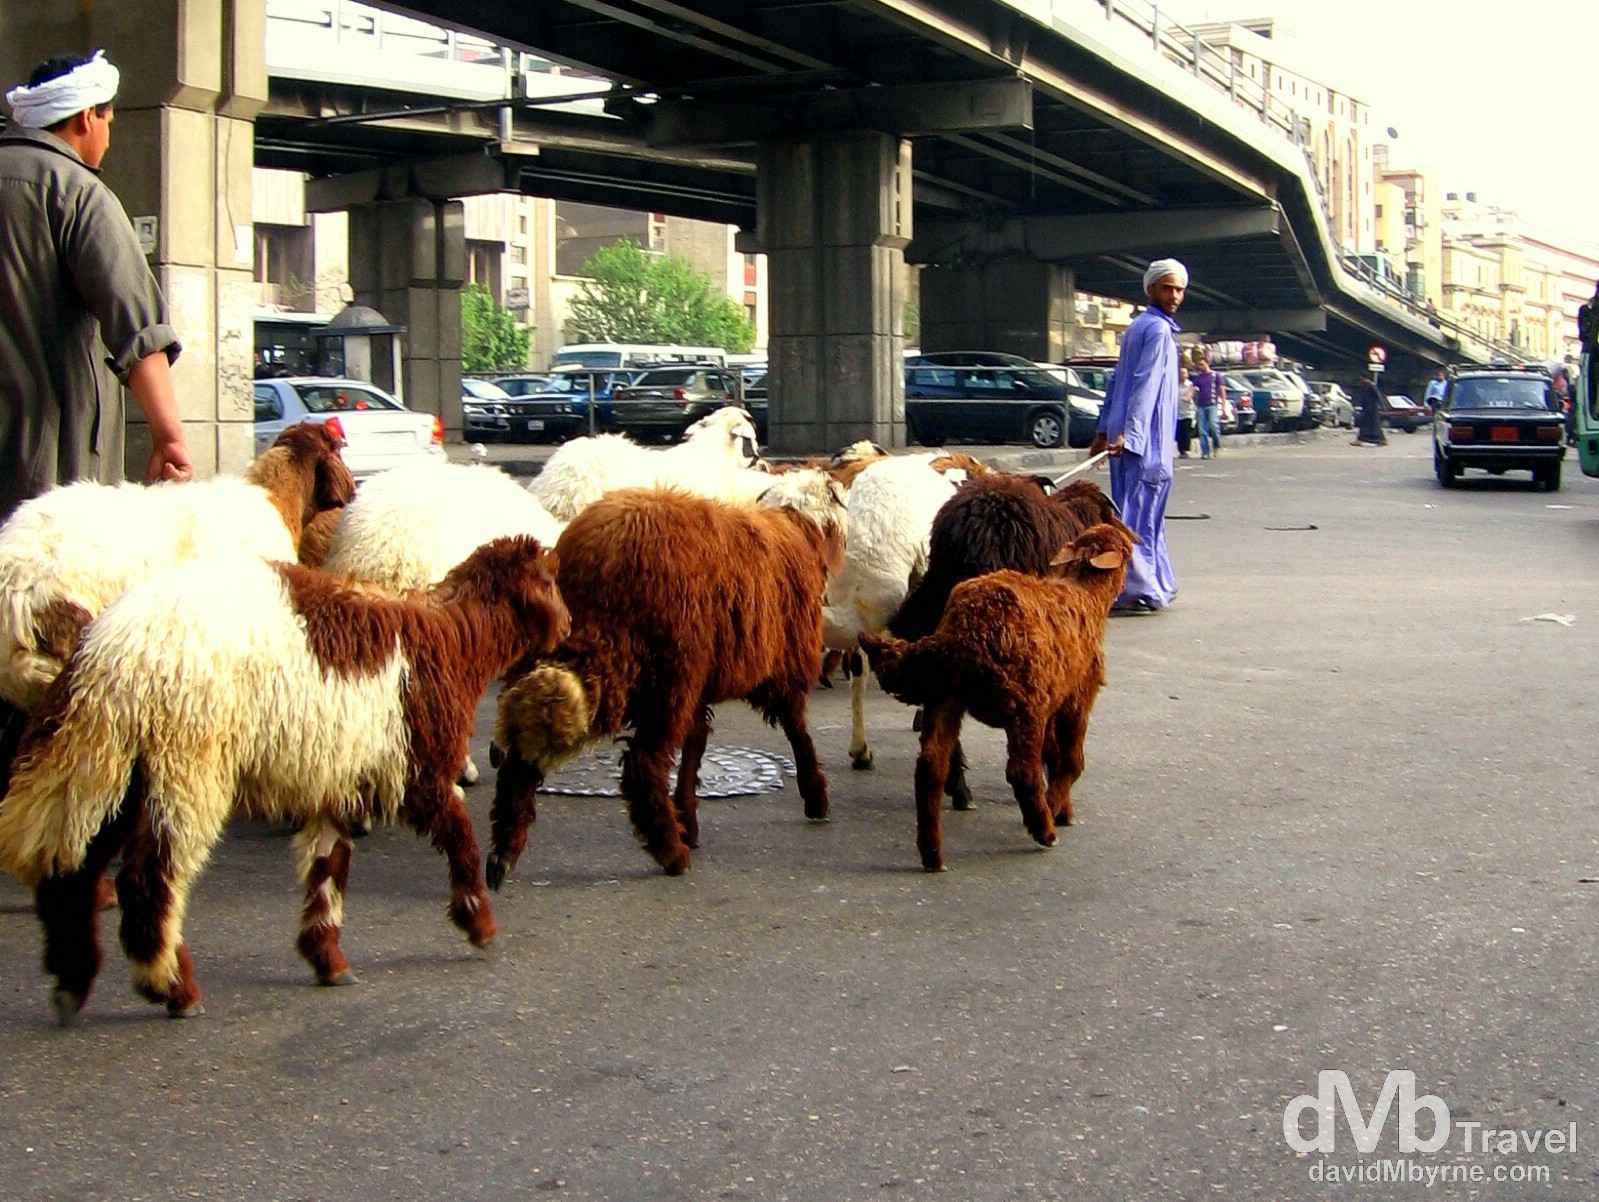 Goat herding on the streets of Al-Azhar, Cairo, Egypt. April 9, 2008.